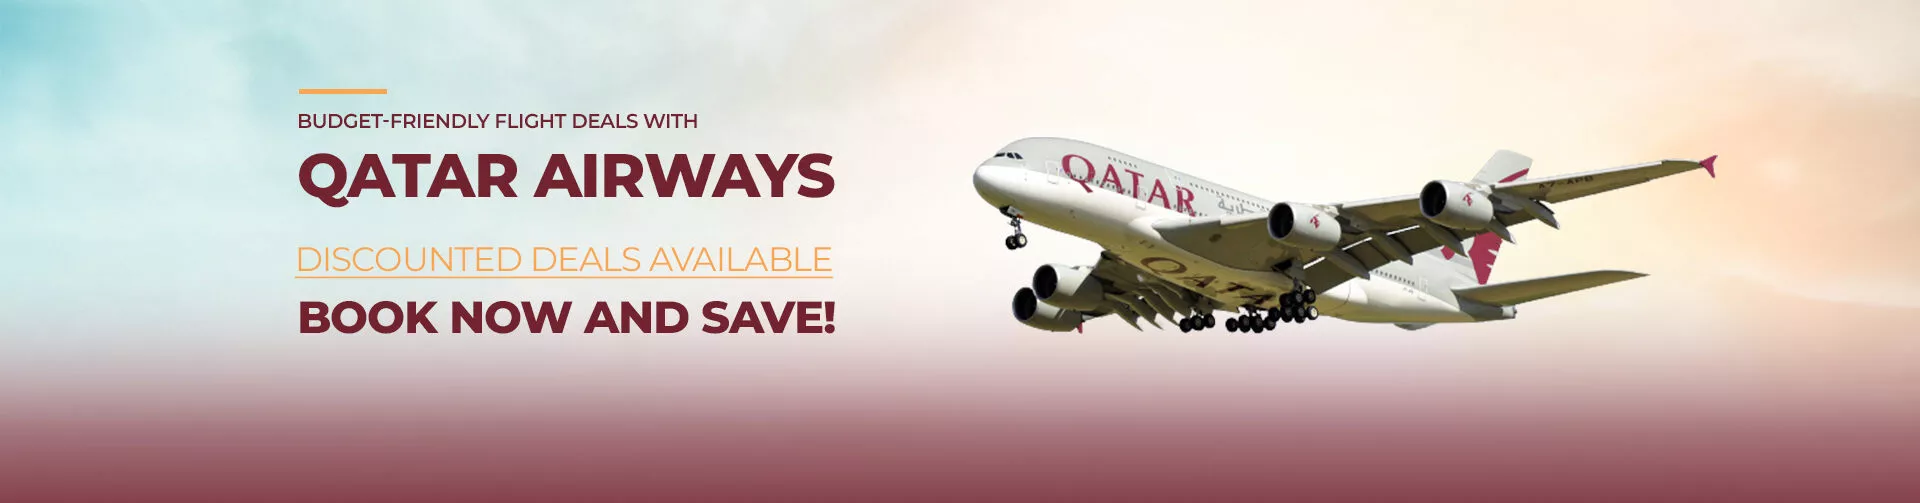 Qatar airways 1100